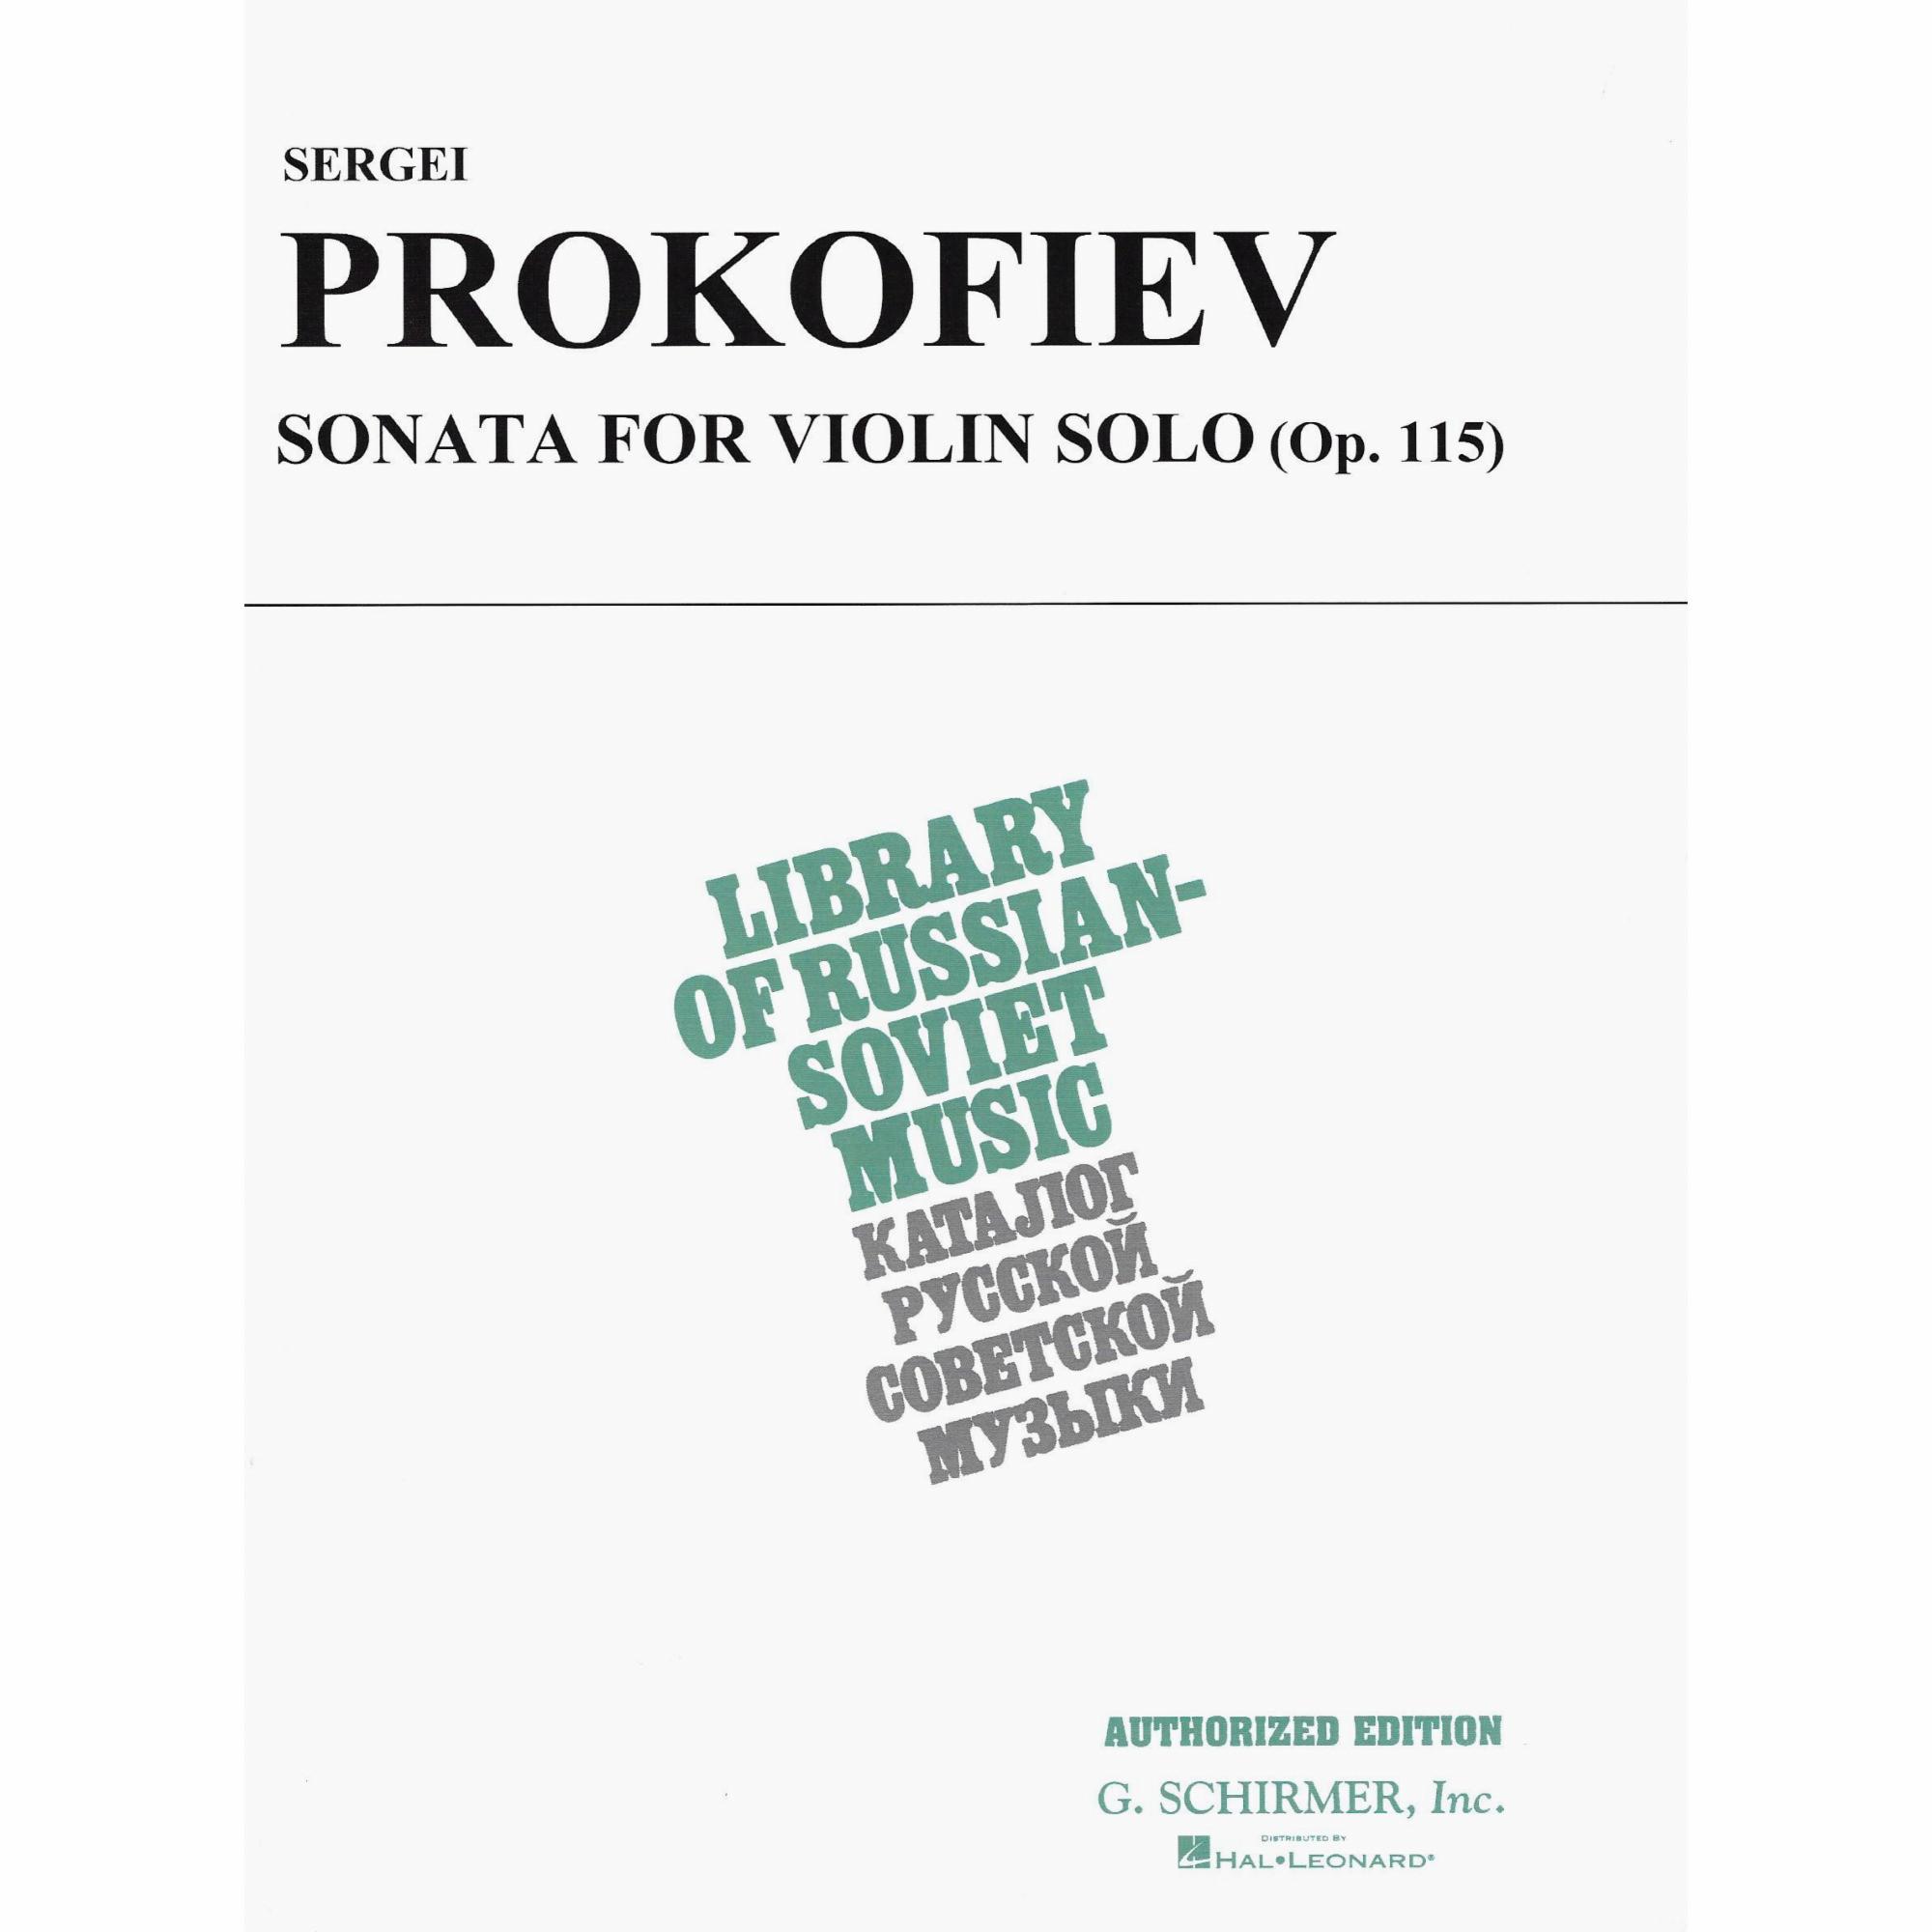 Prokofiev -- Sonata for Solo Violin, Op. 115